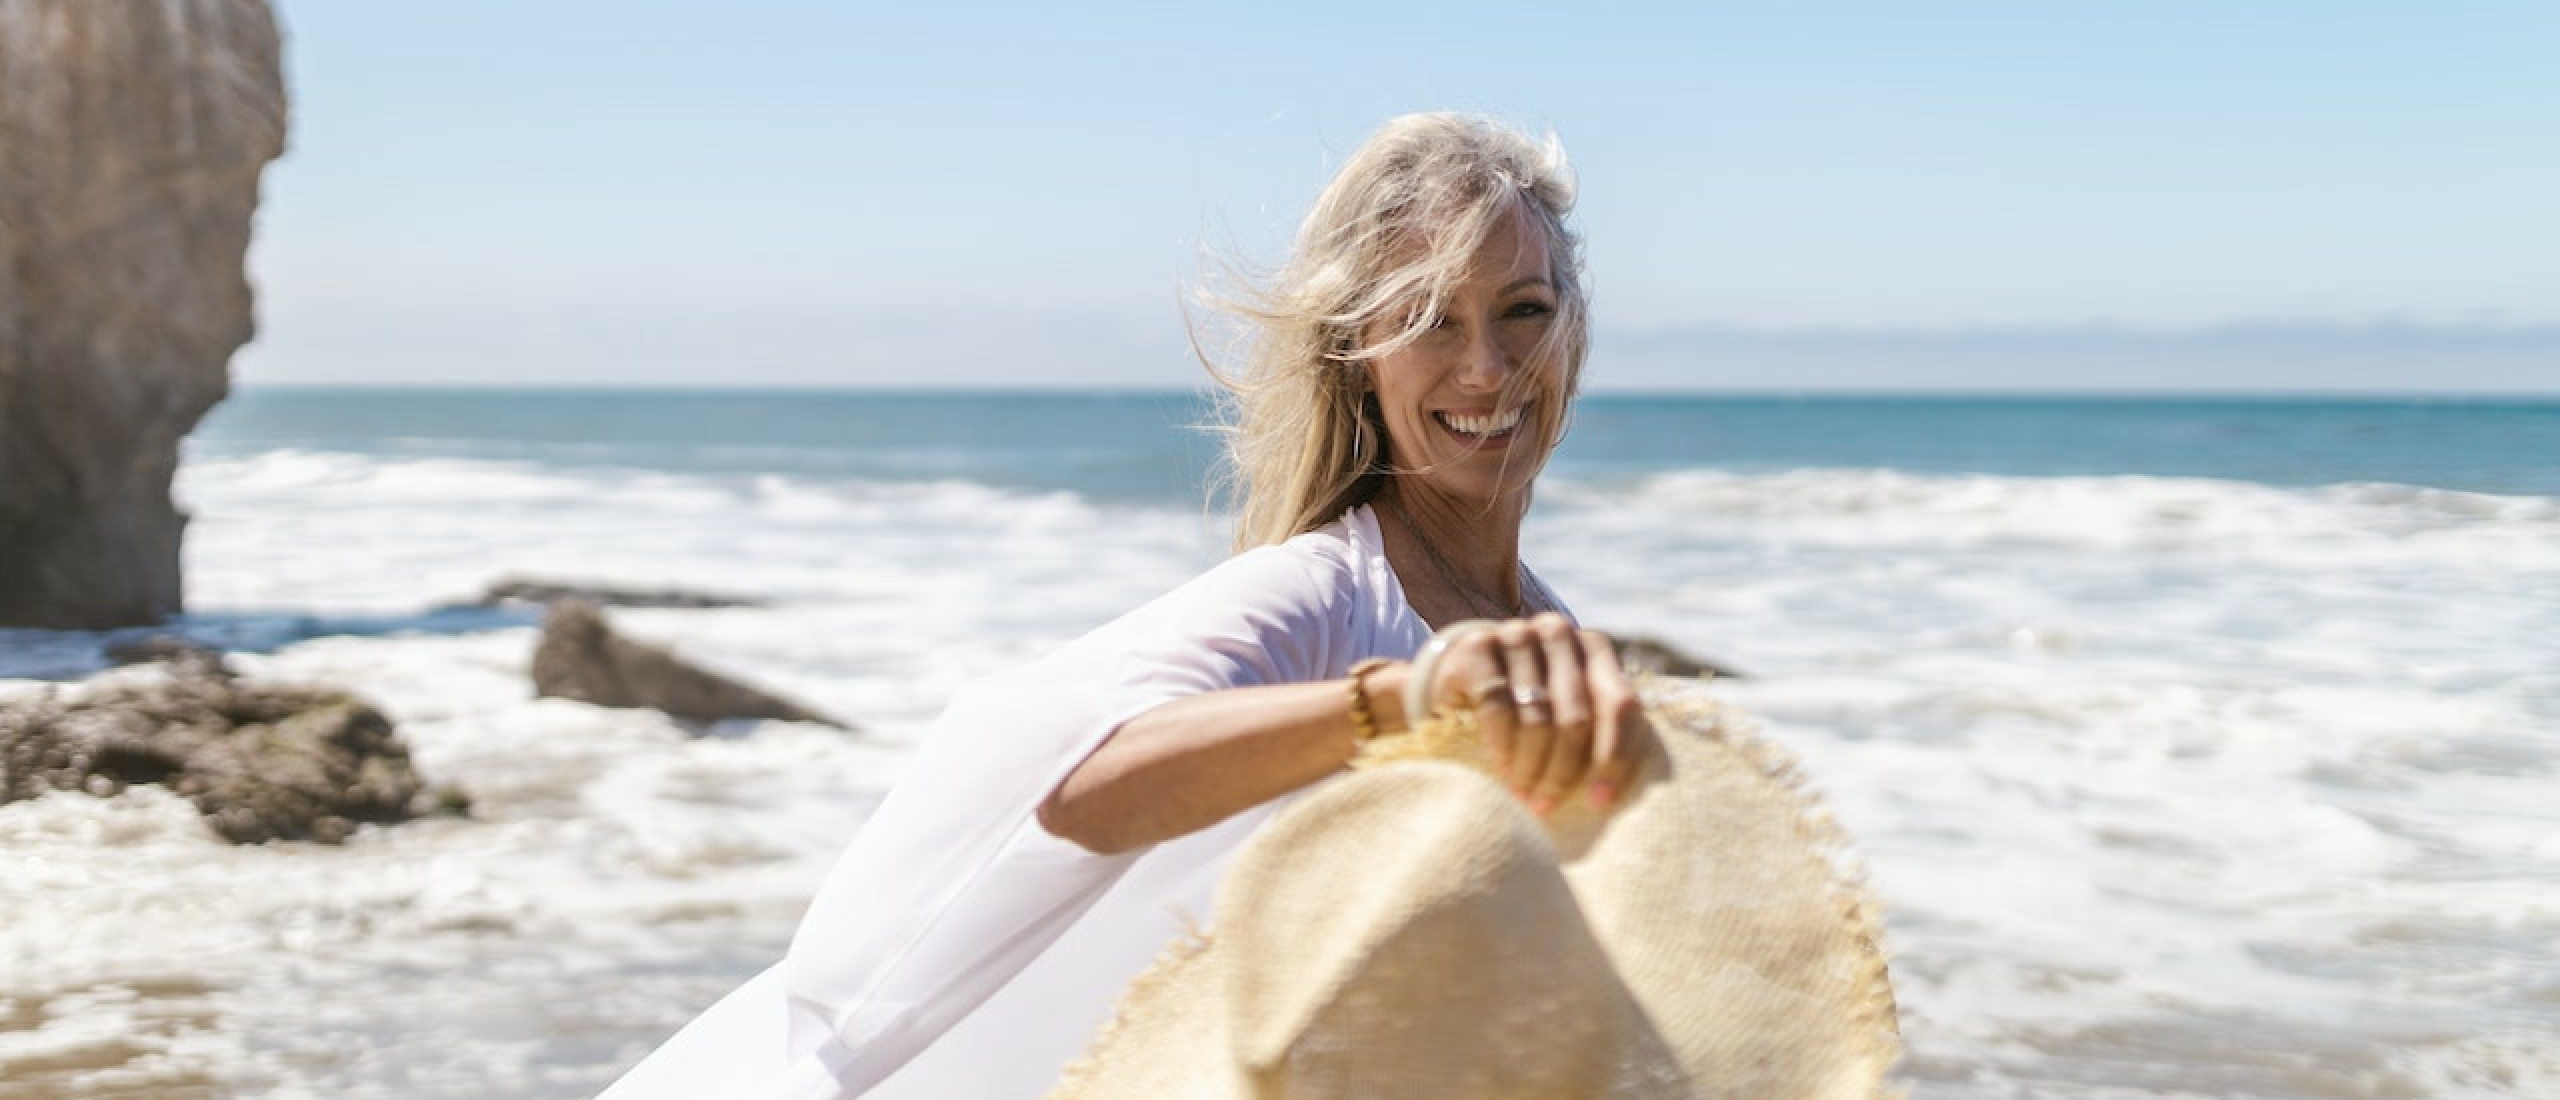 Ontdek hoe je kunt plannen voor jouw gezonde en vervroegde pensioengeld!